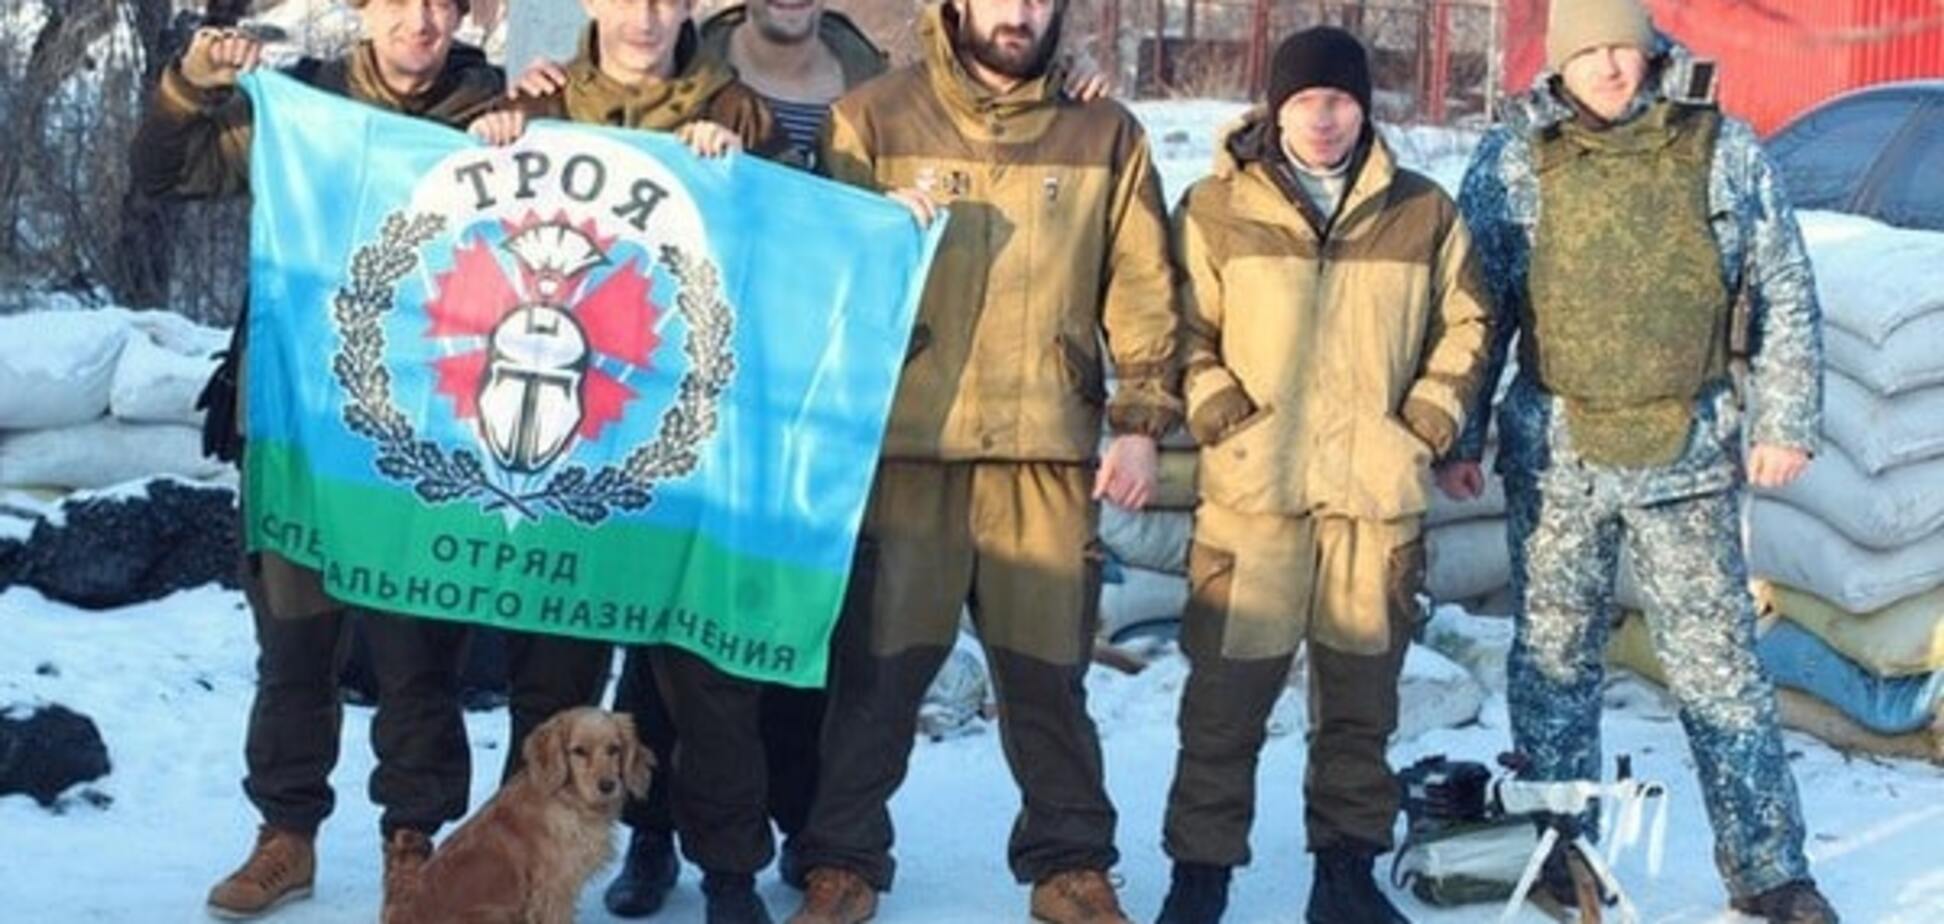 Разборки в 'ДНР': в Горловке ликвидированы остатки отряда 'Троя'